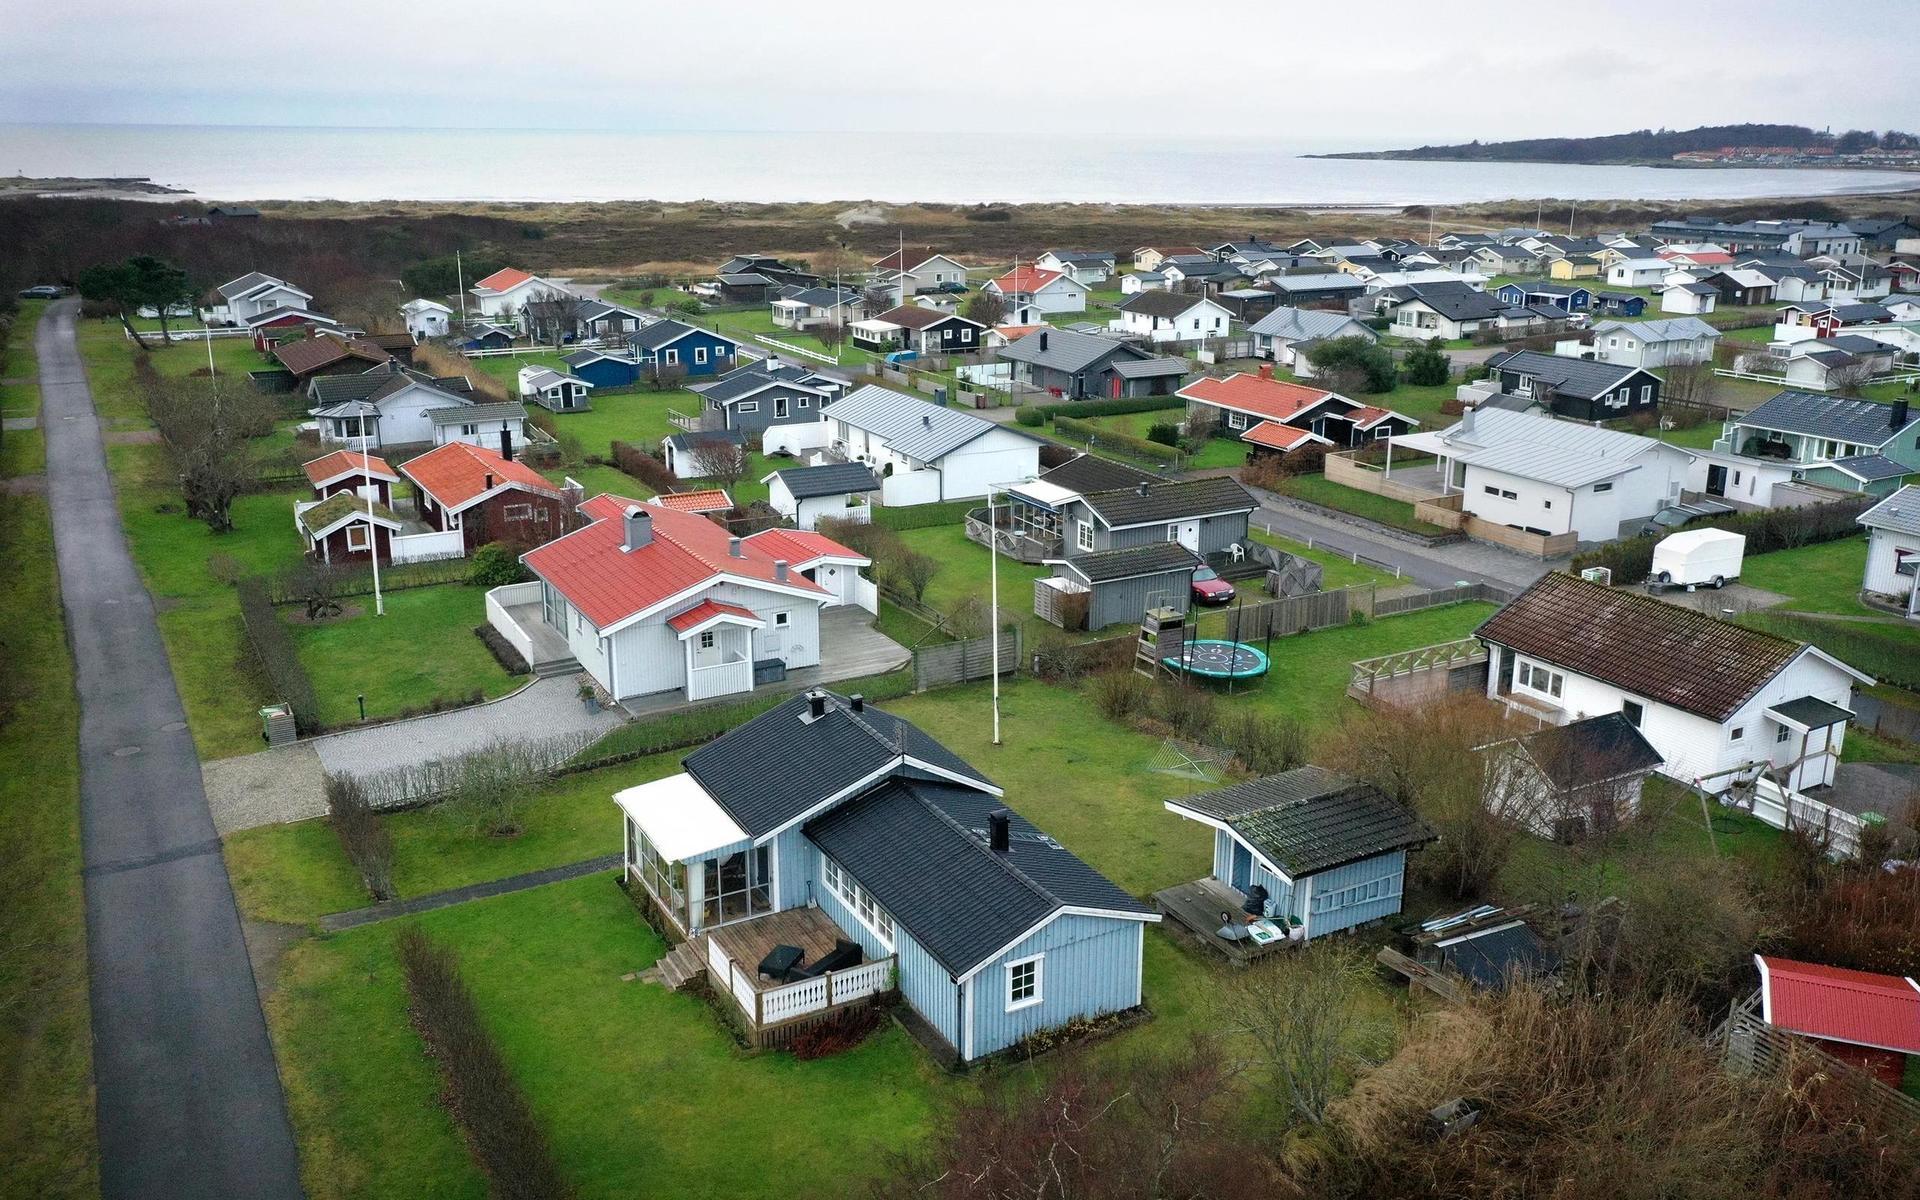 21 arrendetomter i Apelviken ska erbjudas för friköp i den aktuella försäljningsrundan.